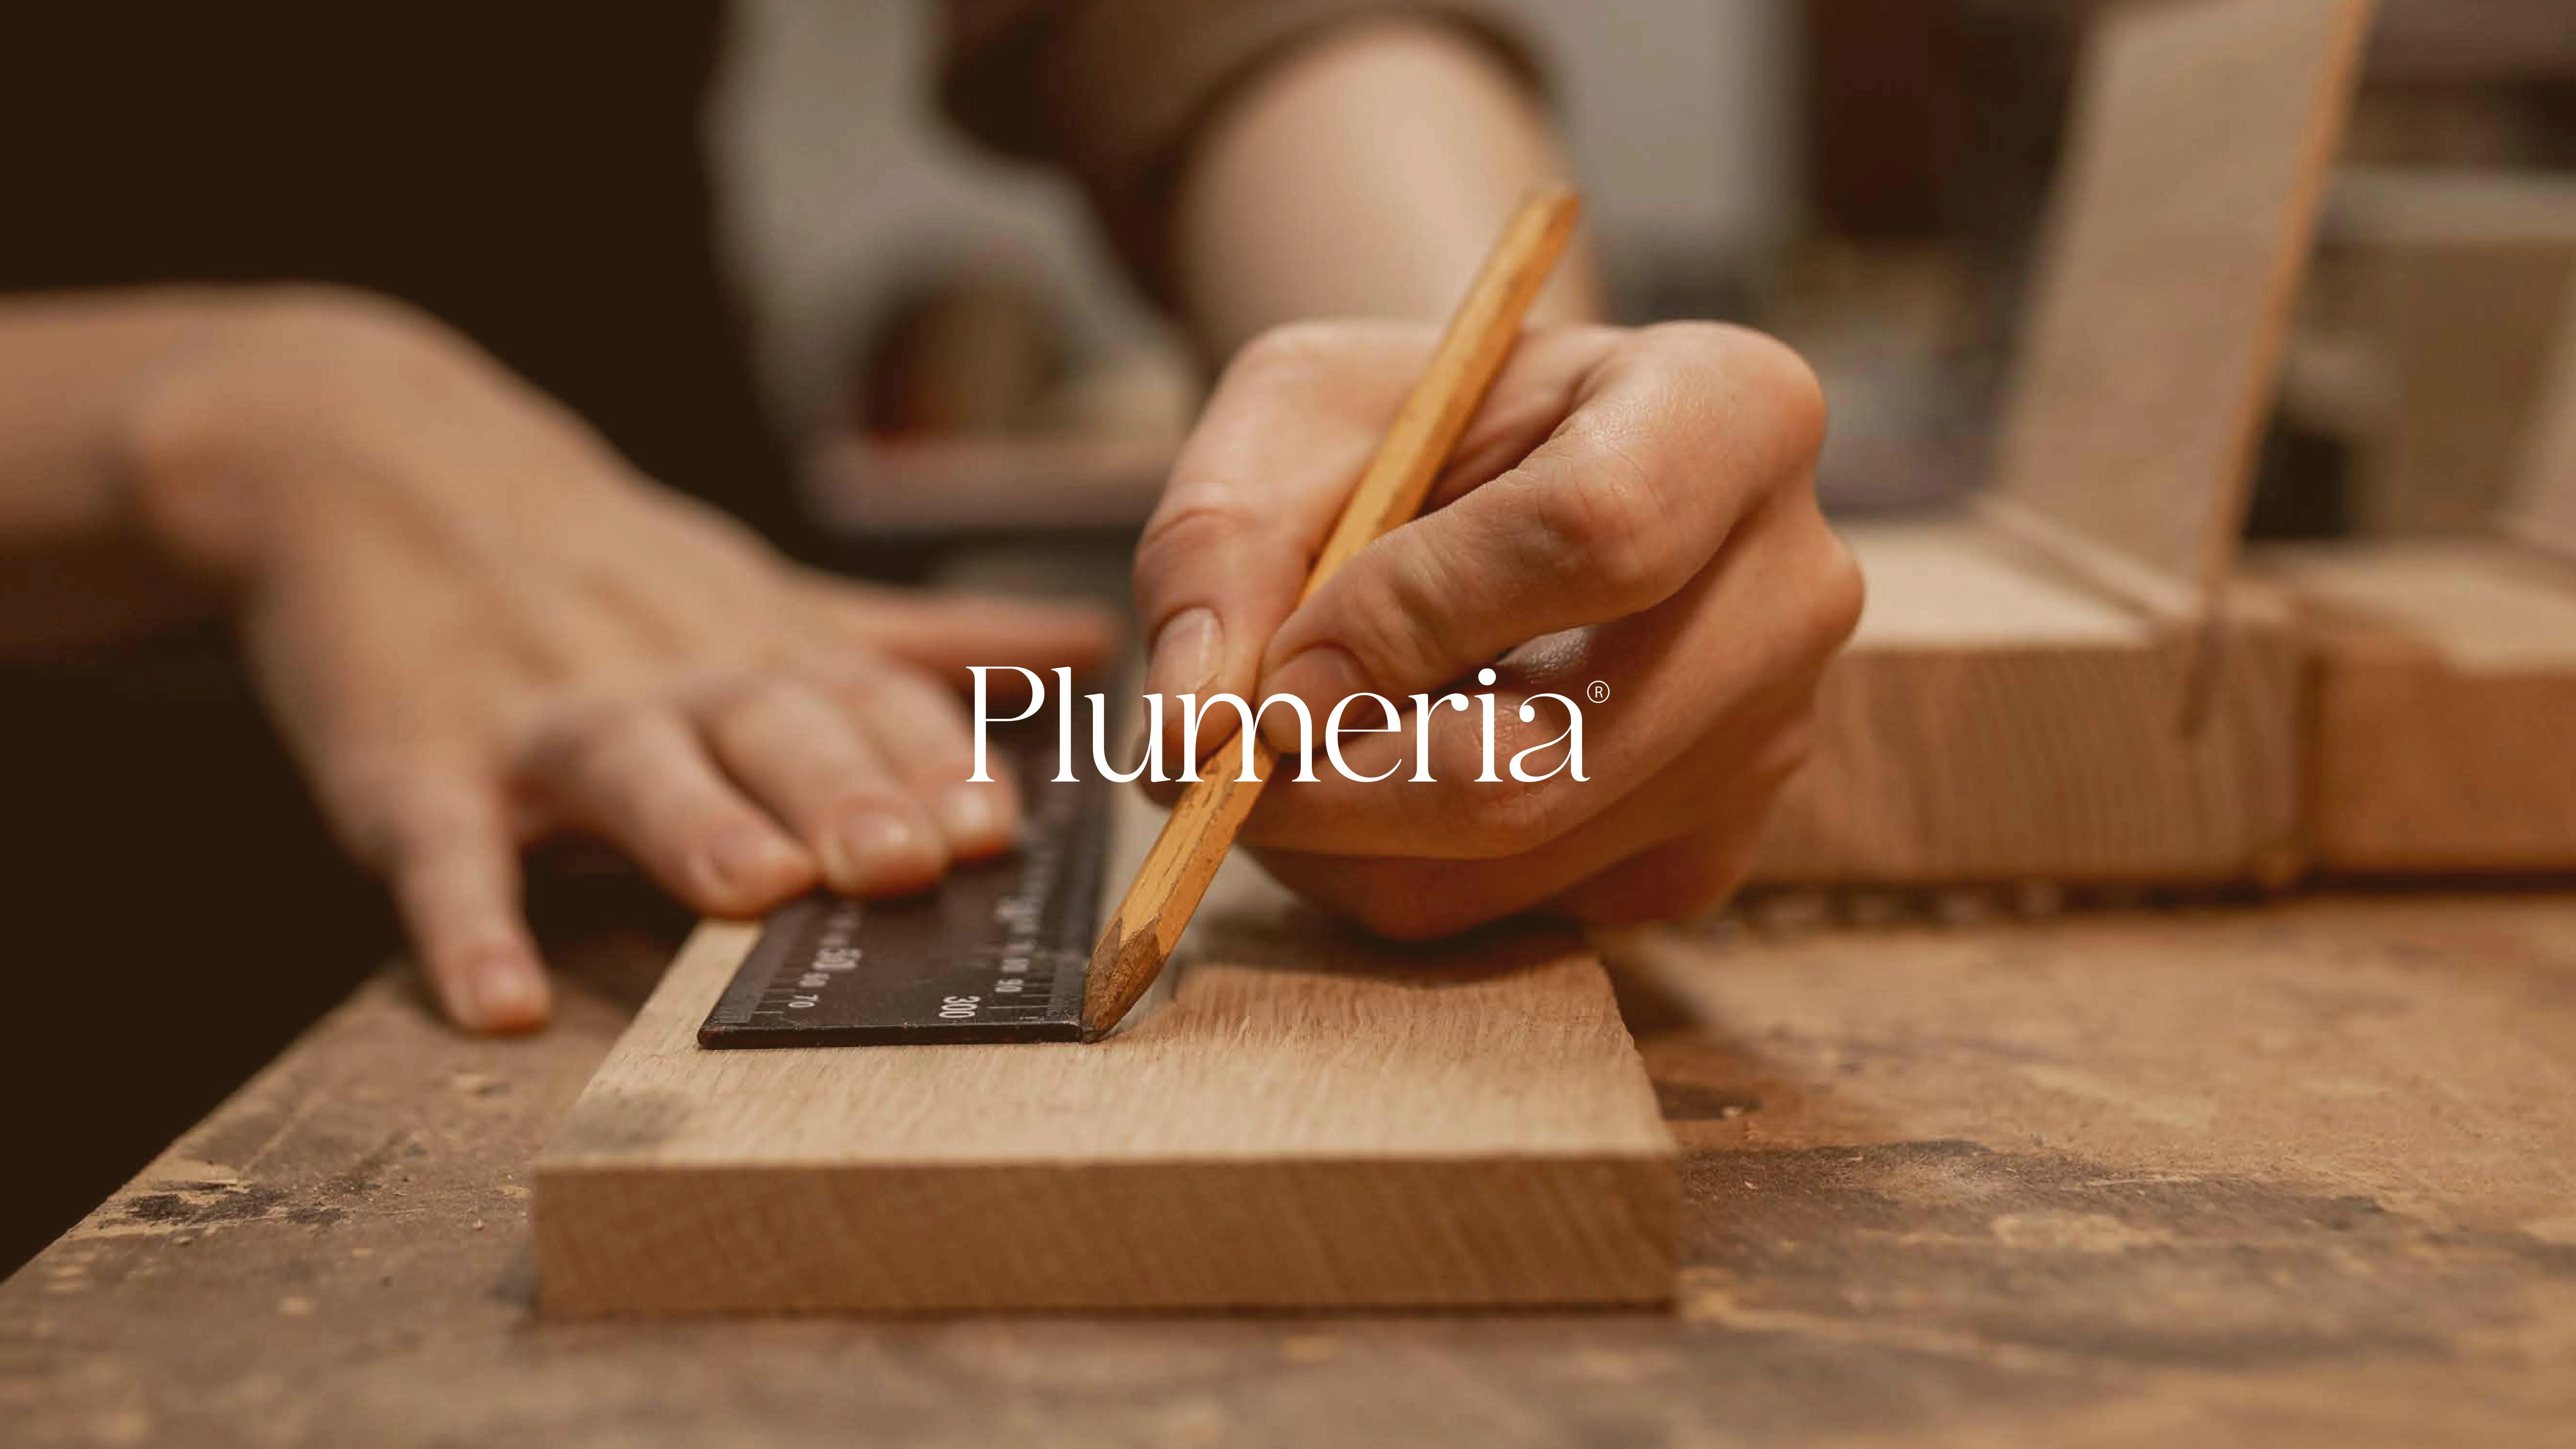 Plumeria Branding Design